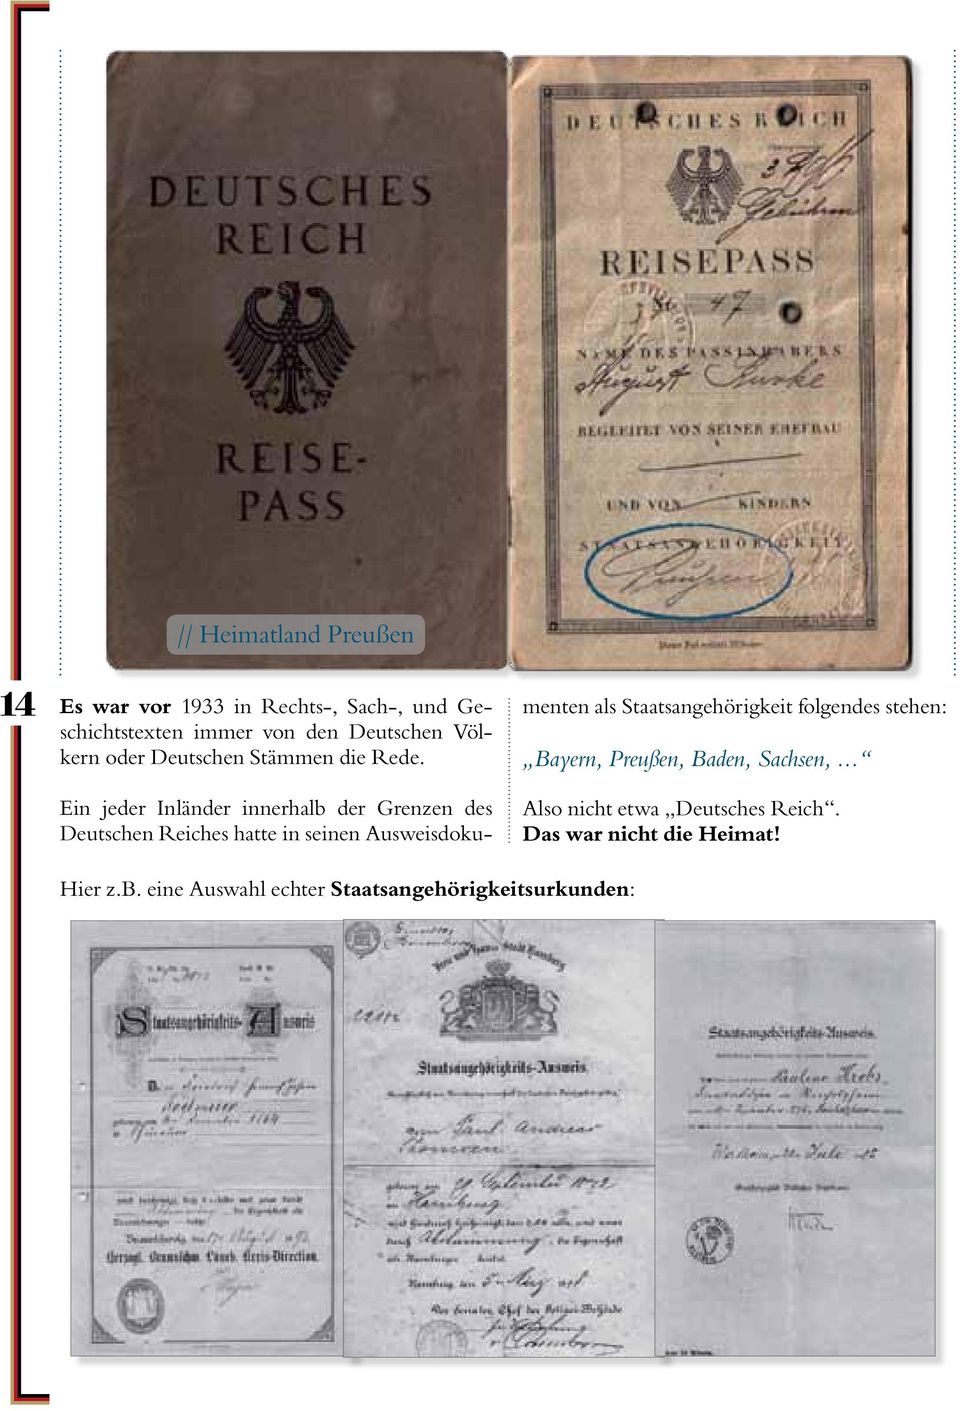 Ein jeder Inländer innerhalb der Grenzen des Deutschen Reiches hatte in seinen Ausweisdokumenten als